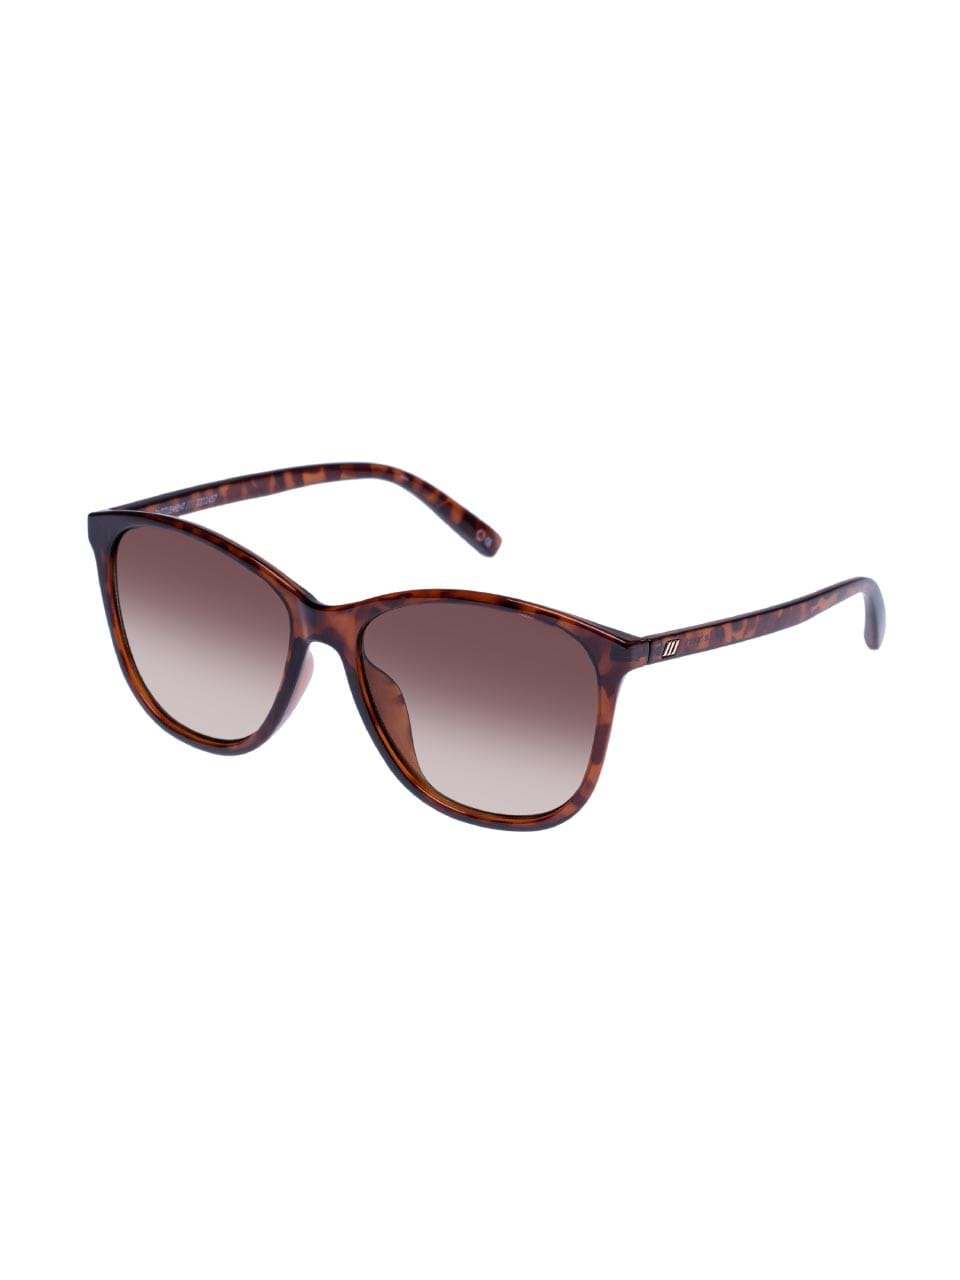 12856円 【現金特価】 サングラス ハット コレクション レディース アイウェア アクセサリー Sunglasses 0HU1008 SHINY SILVER LIGHT BLUE MIRROR